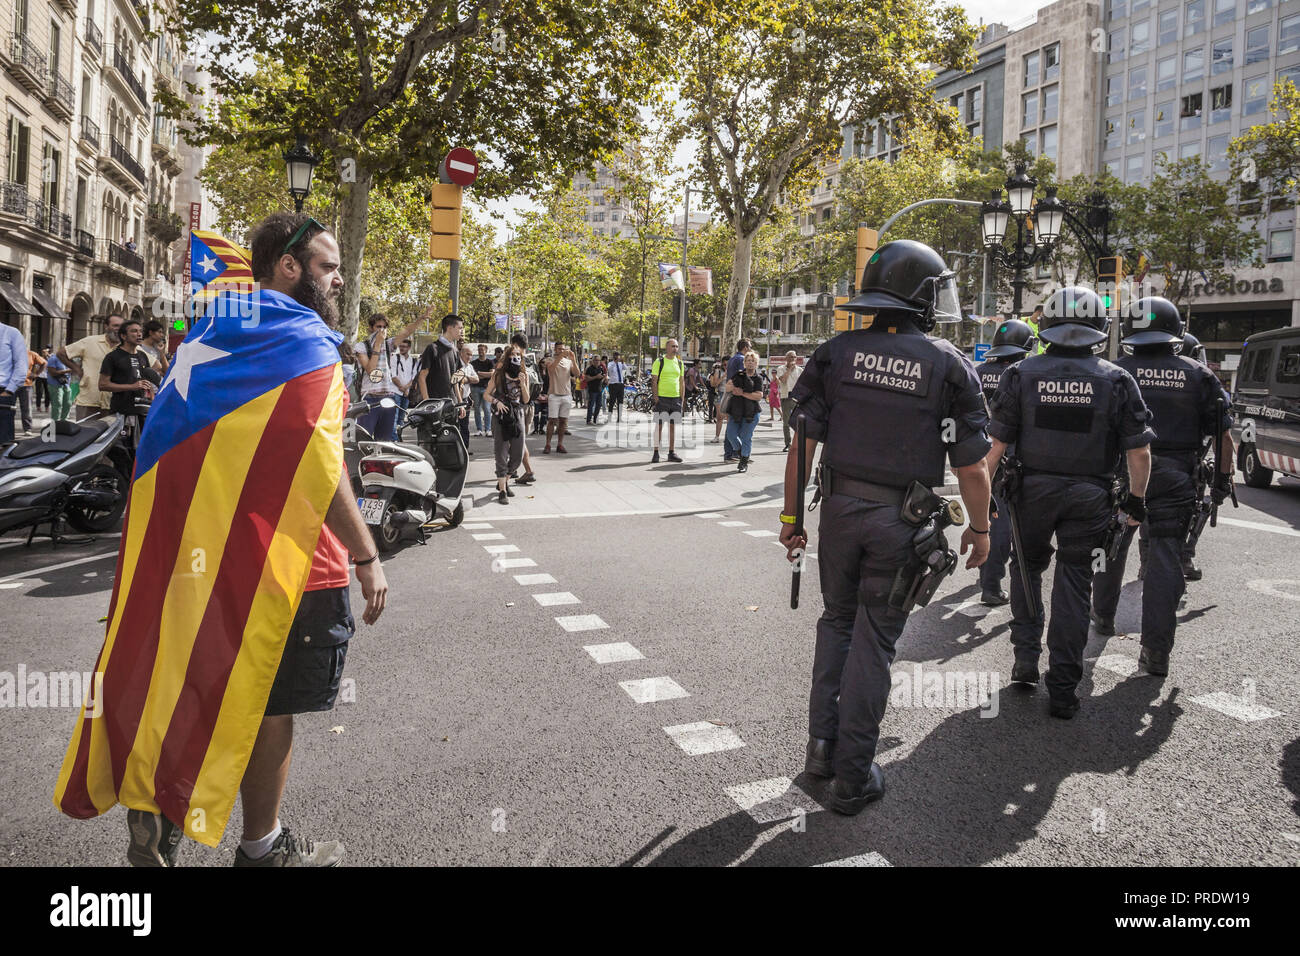 Barcelone, Catalogne, Espagne. 1 octobre, 2018. Avec drapeau indépendantiste catalan observe les policiers anti-émeute après une démonstration pendant le premier anniversaire de l'indépendance des élections catalanes en 2017. Credit : Celestino Arce Lavin/ZUMA/Alamy Fil Live News Banque D'Images